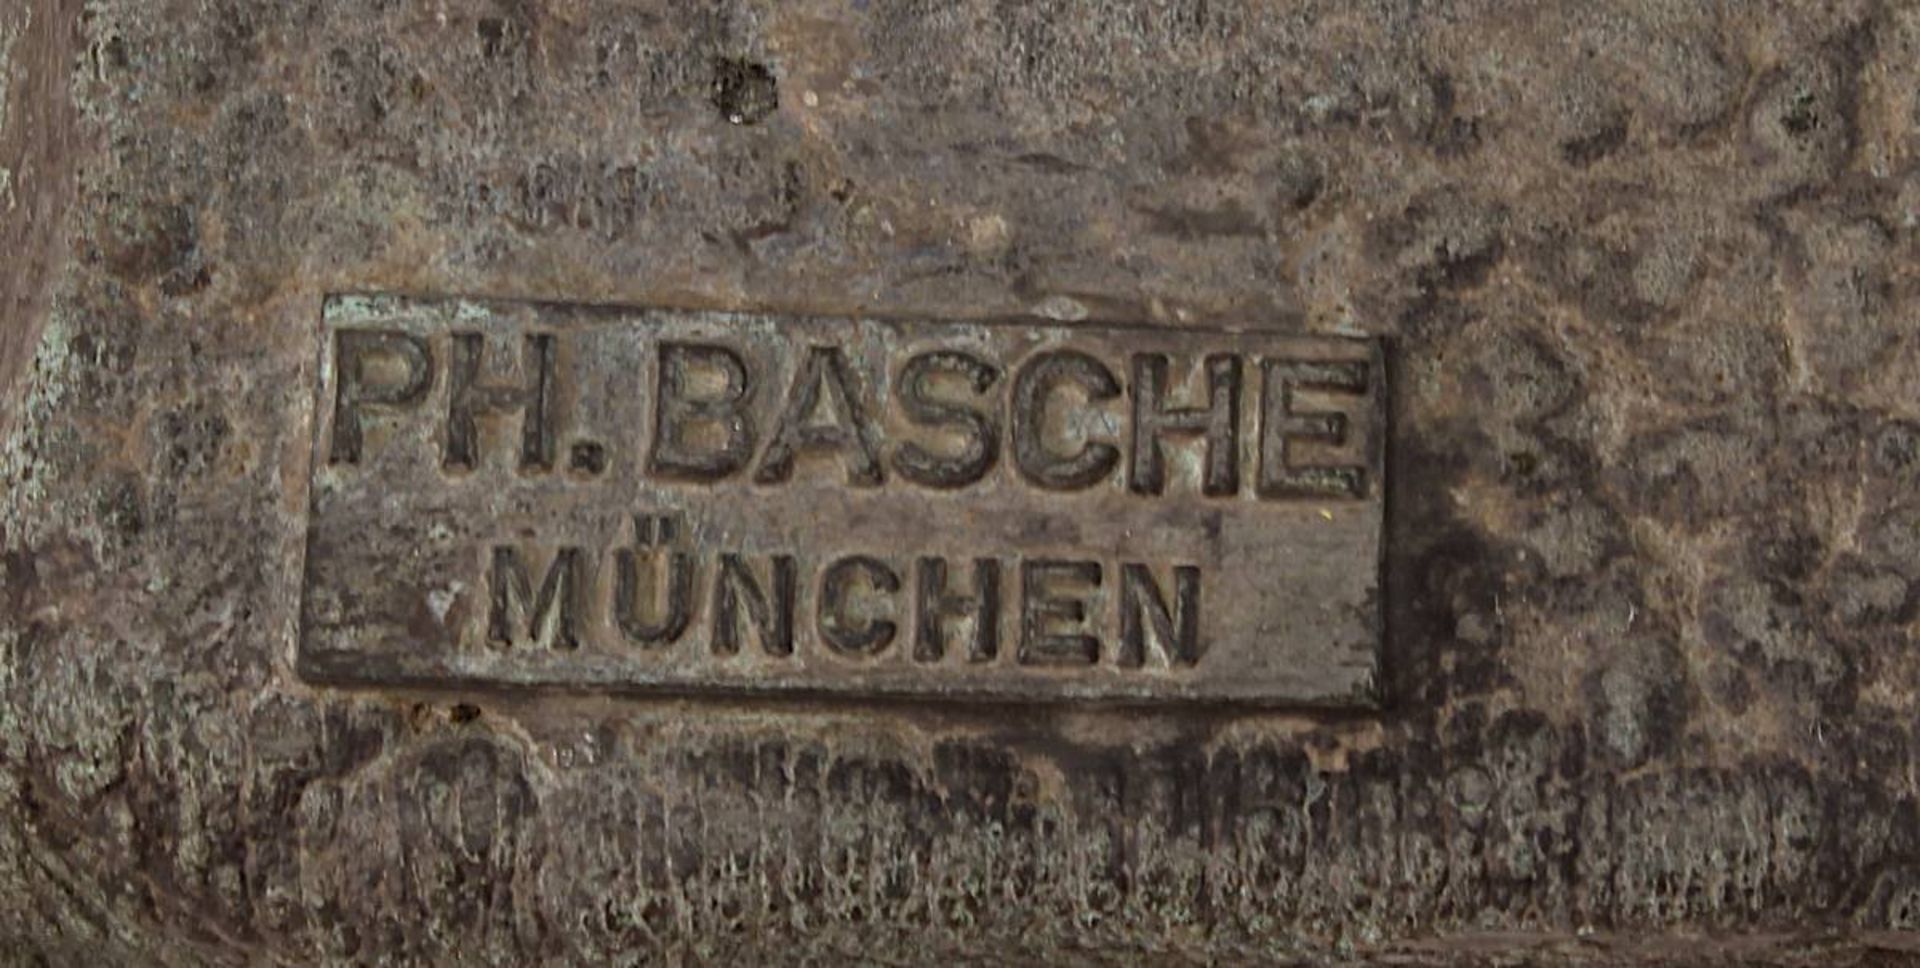 Basche, Philipp (zeitgen. Bildhauer, München), Kronenkranich, große Gartenskulptur angefertigt 1977, - Image 2 of 2